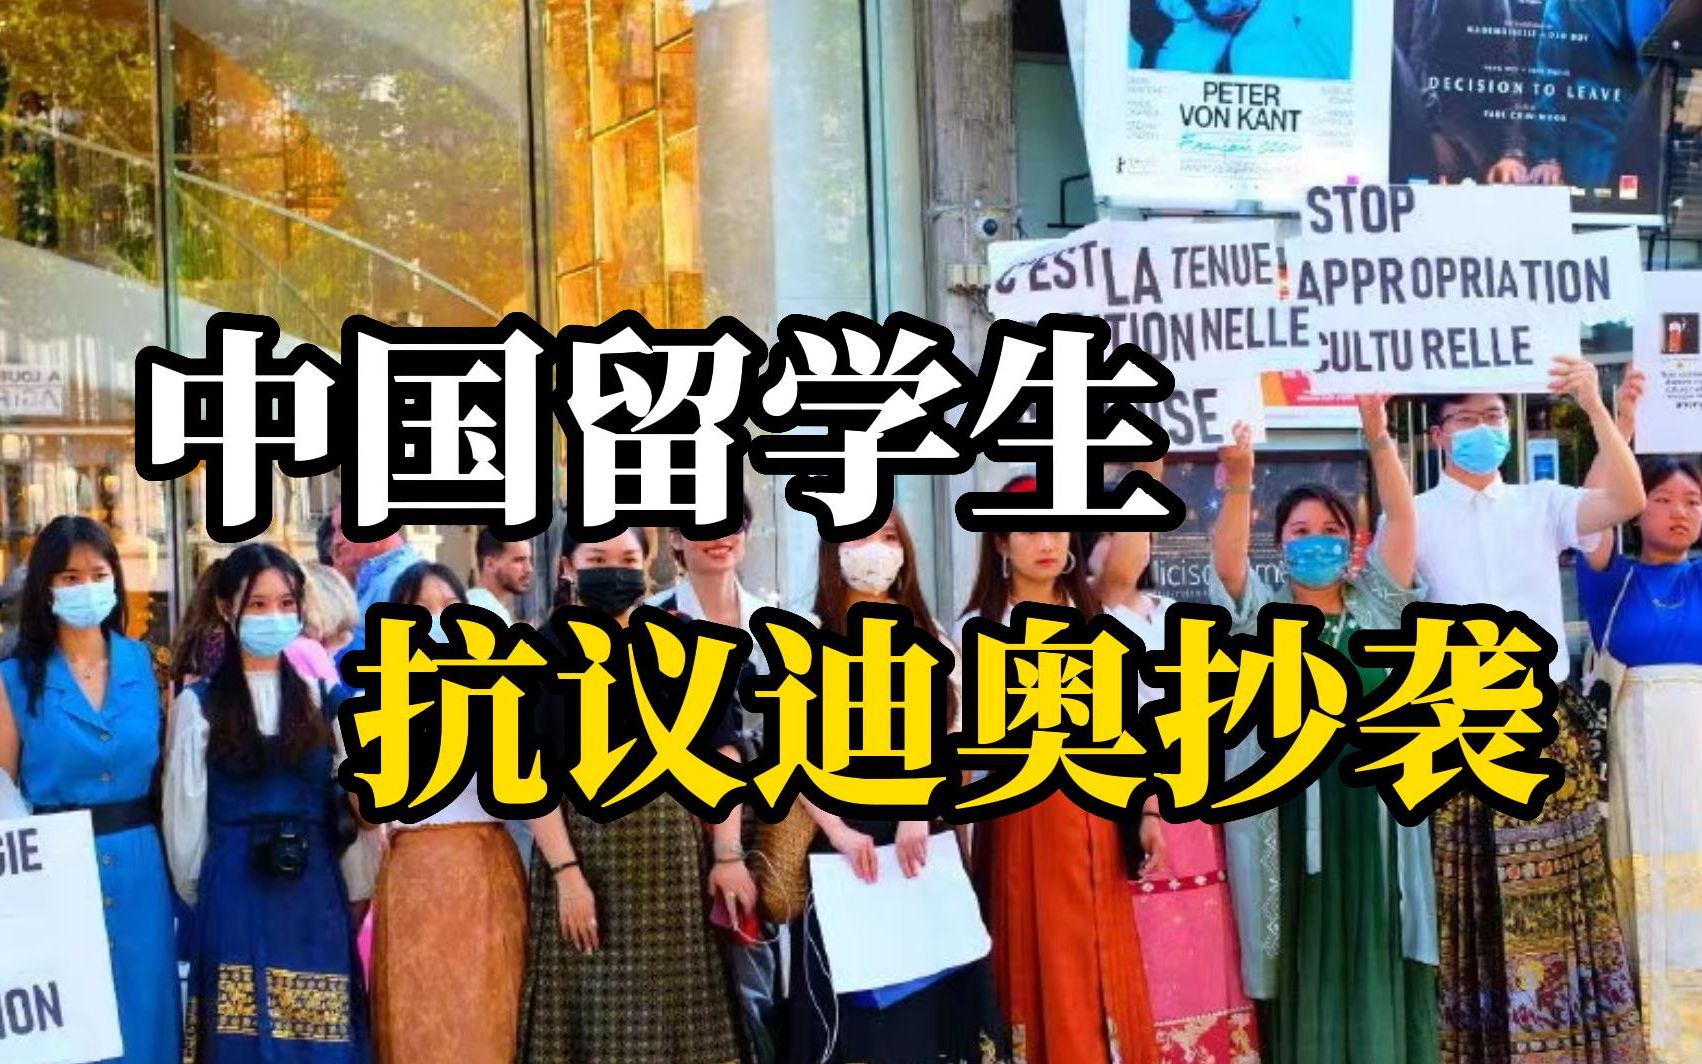 中国留学生身着汉服在法国抗议迪奥文化挪用：请尊重我们的文化